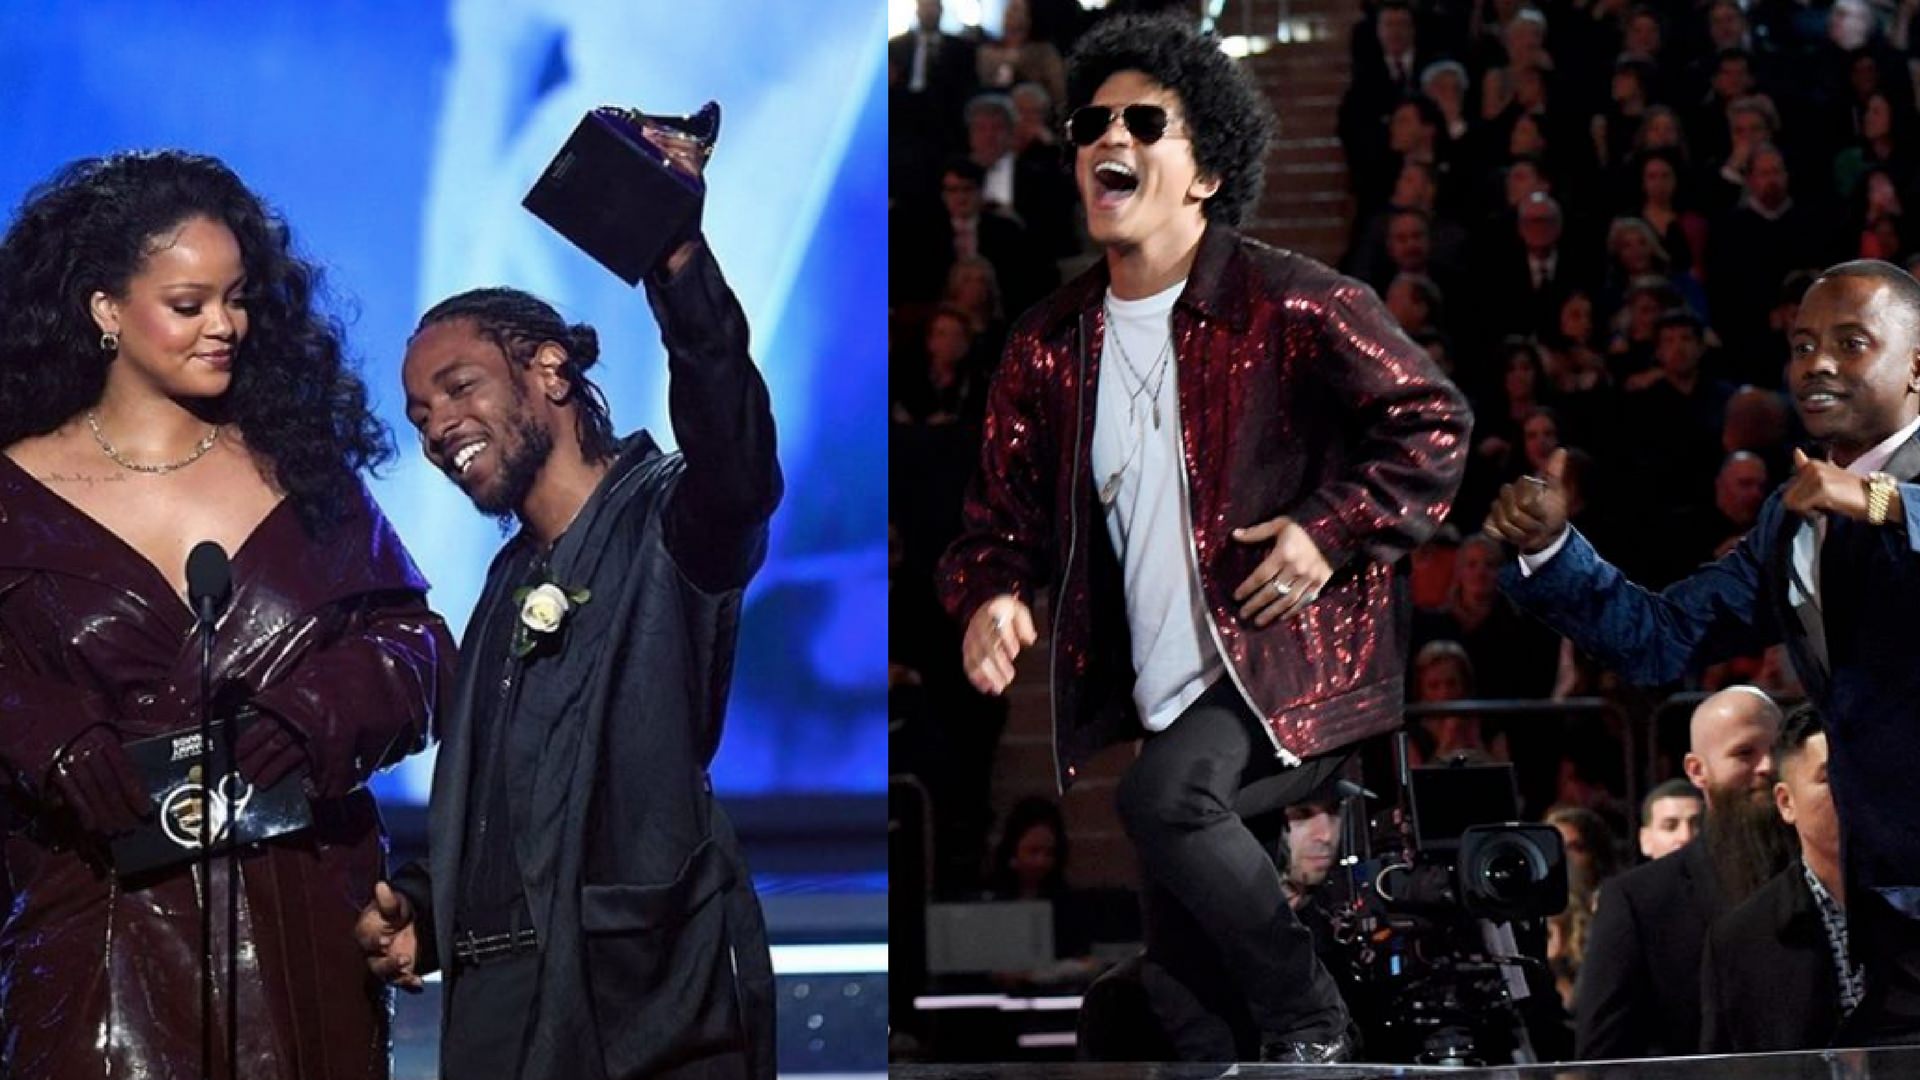 Oto zwycięzcy tegorocznych nagród Grammy!